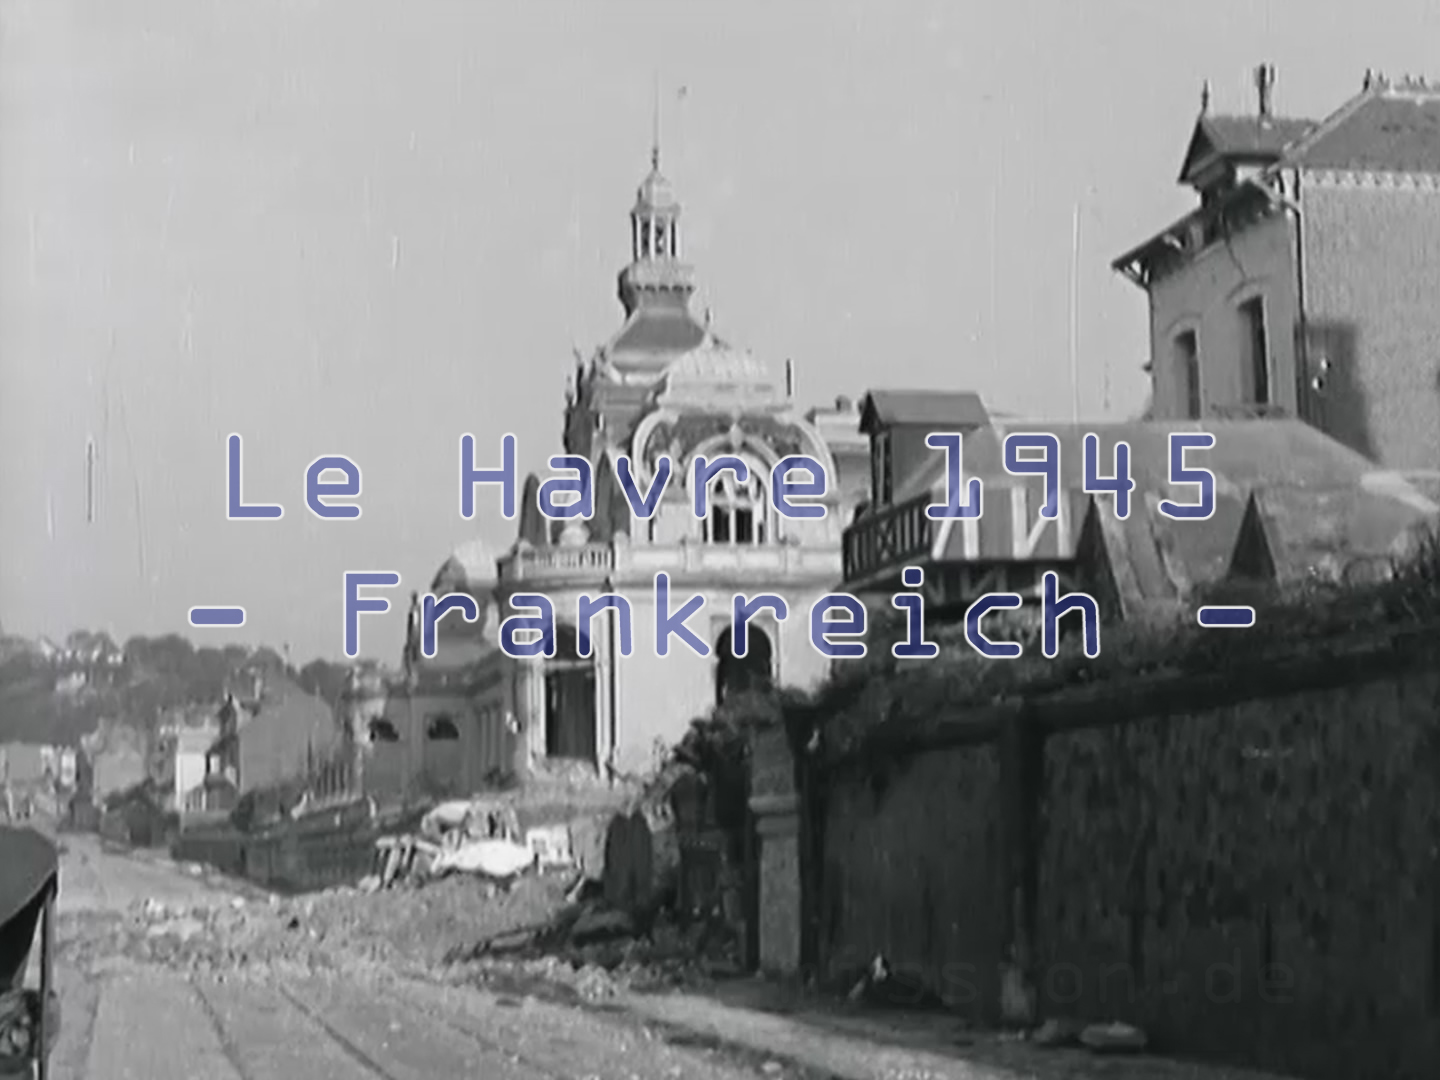 Le Havre in der Normandie in Frankreich mit Bunkern und getarnten MG-Nestern der Wehrmacht